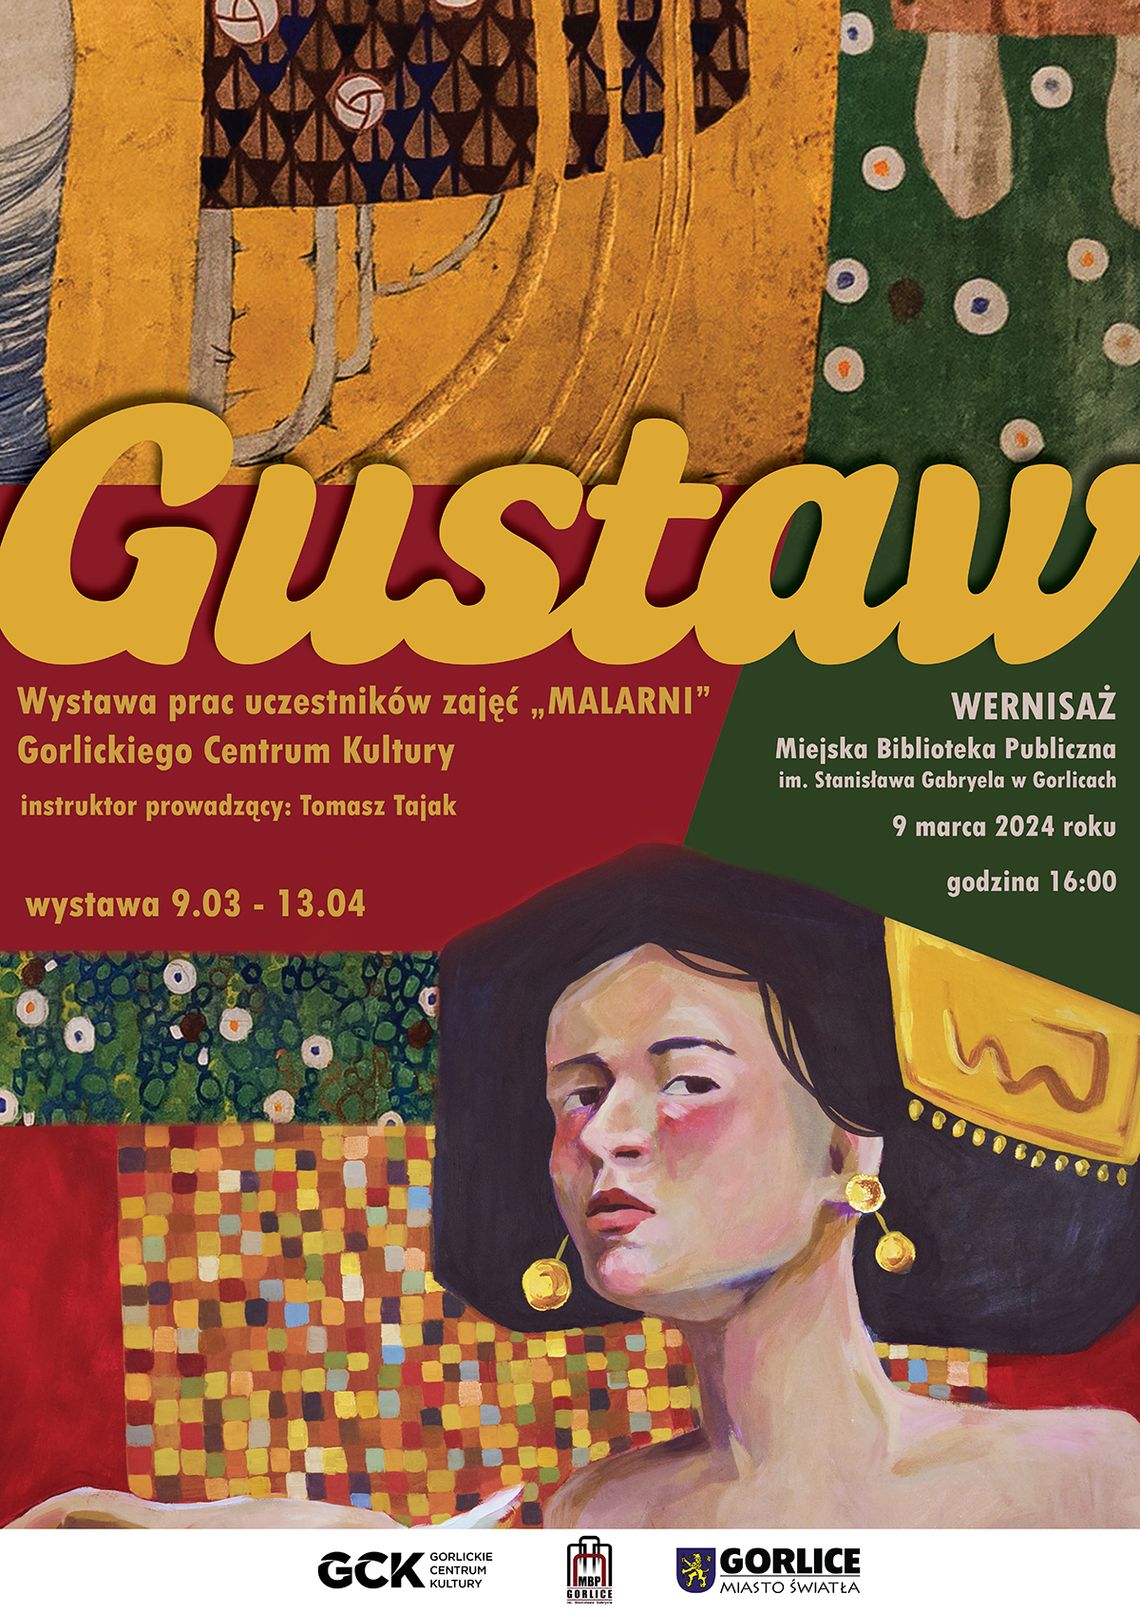 Wernisaż wystawy „Gustaw” w gorlickiej bibliotece | halogorlice.info